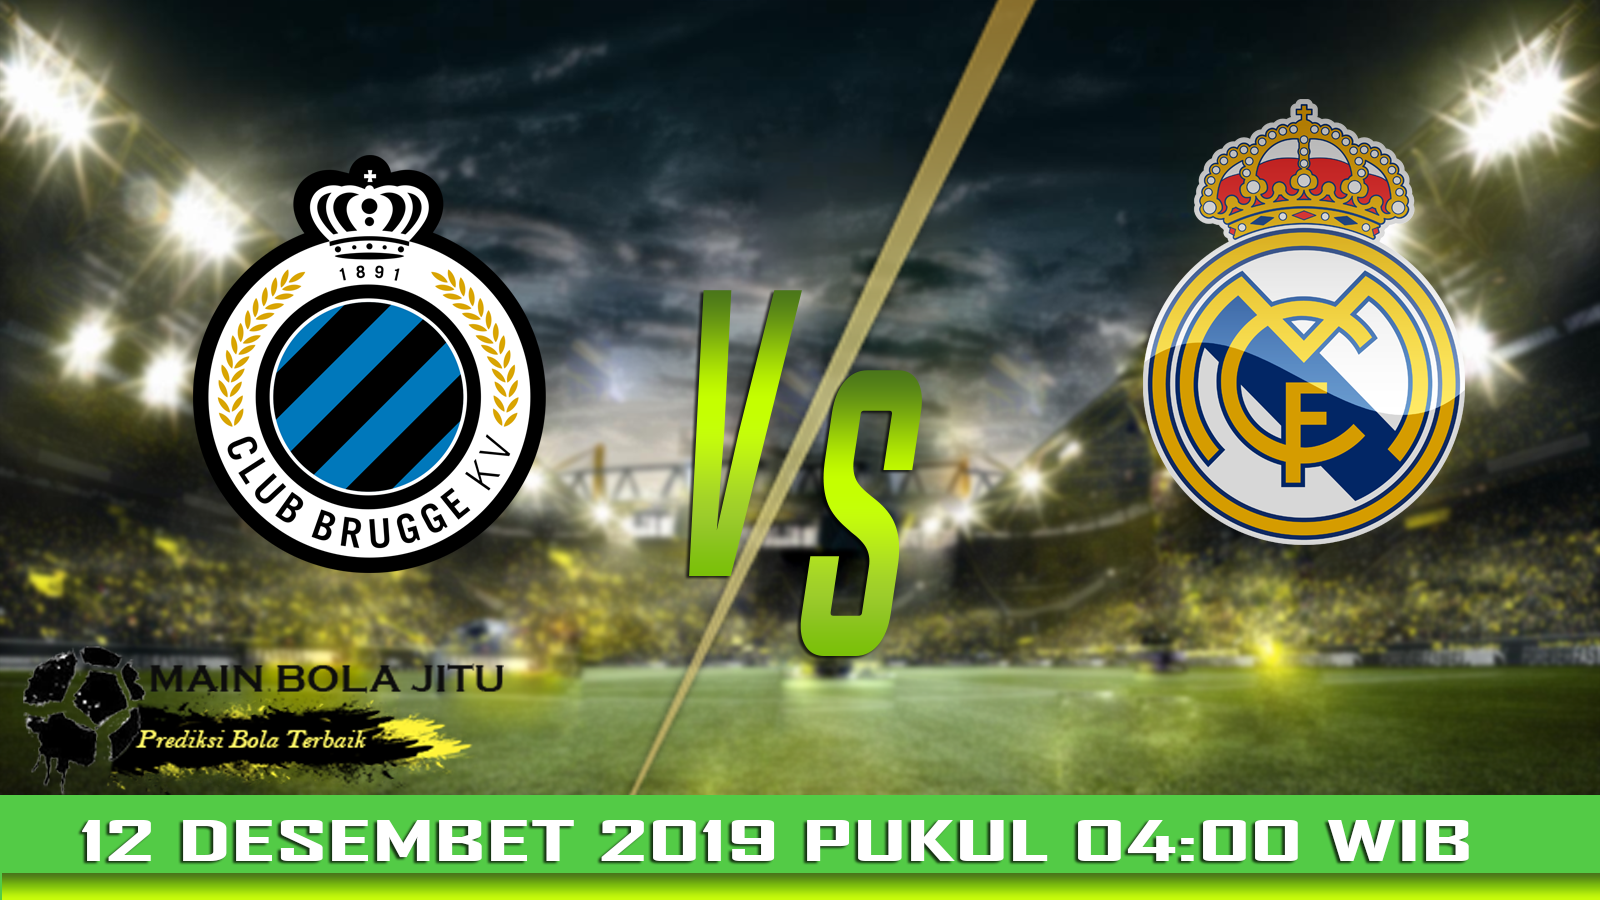 Prediksi Bola Club Brugge vs Real Madrid tanggal 12-12-2019